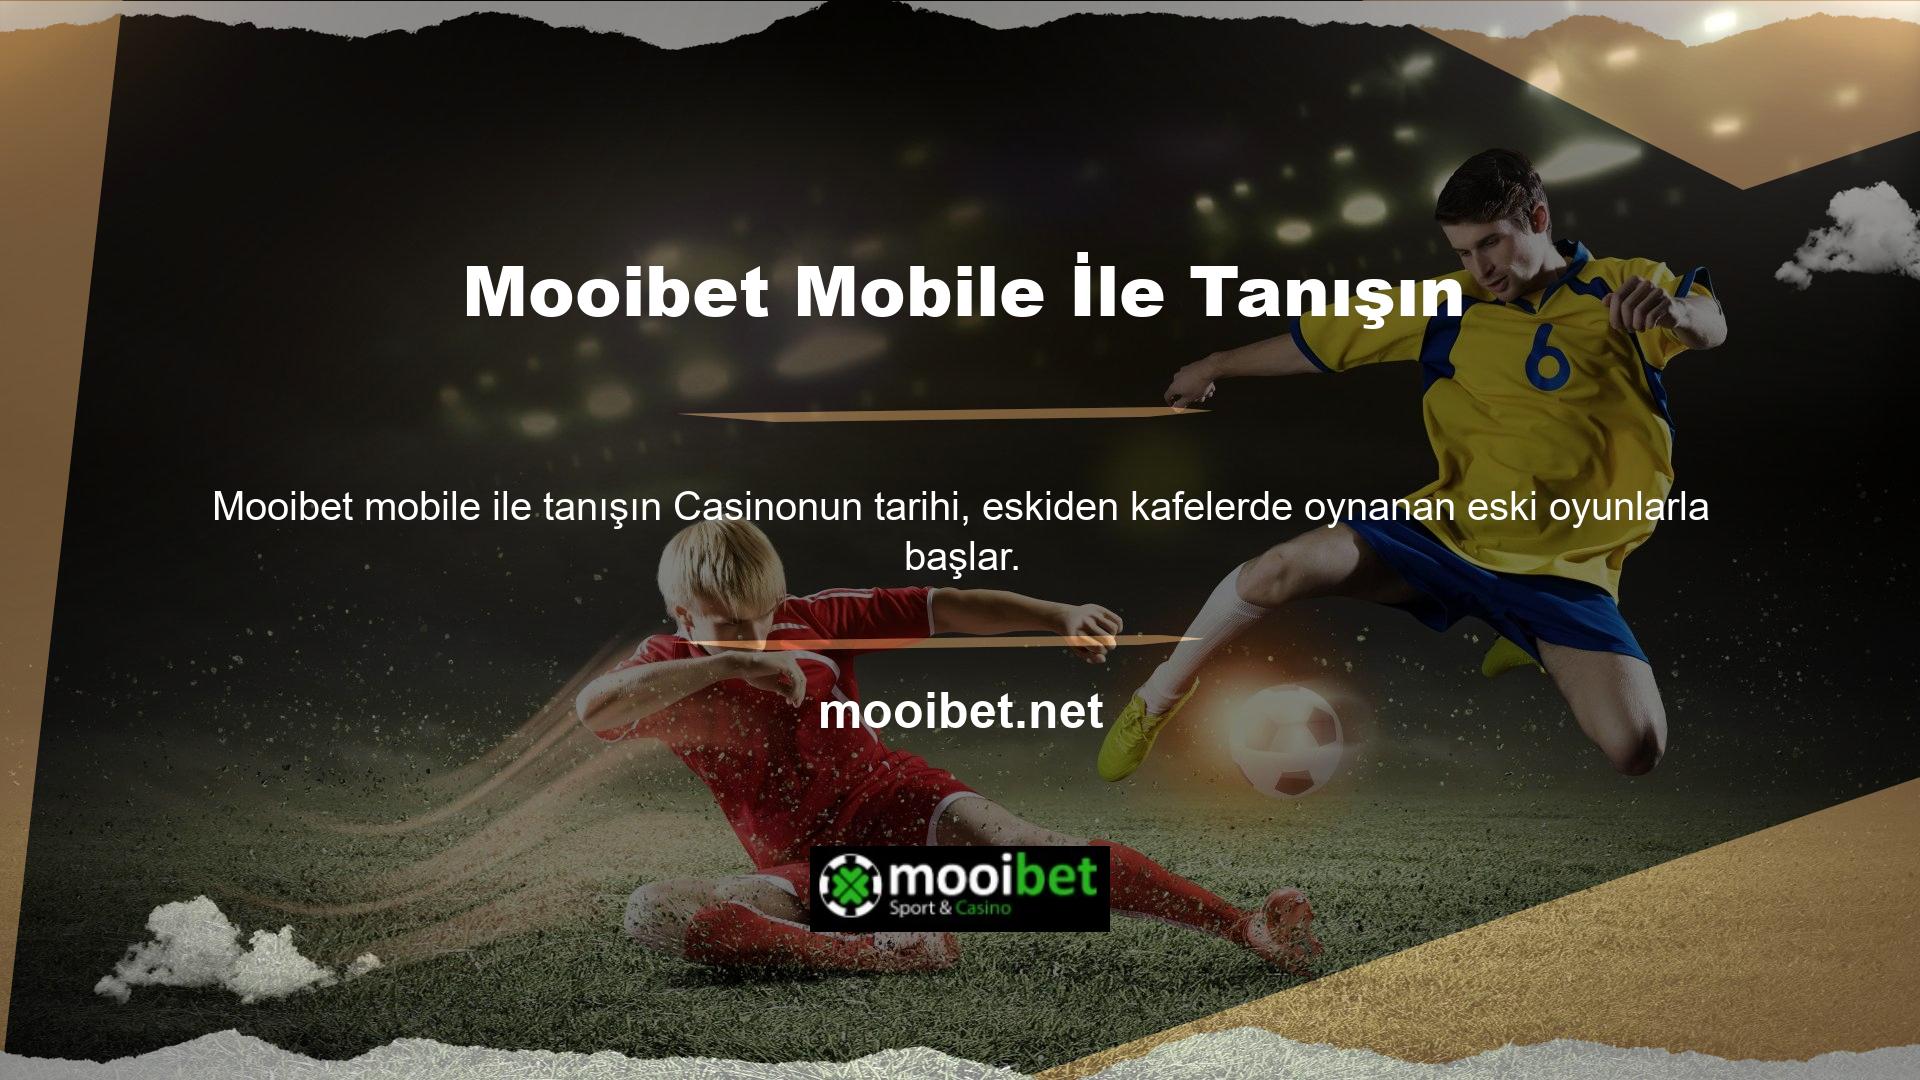 Mooibet mobile ile tanışın